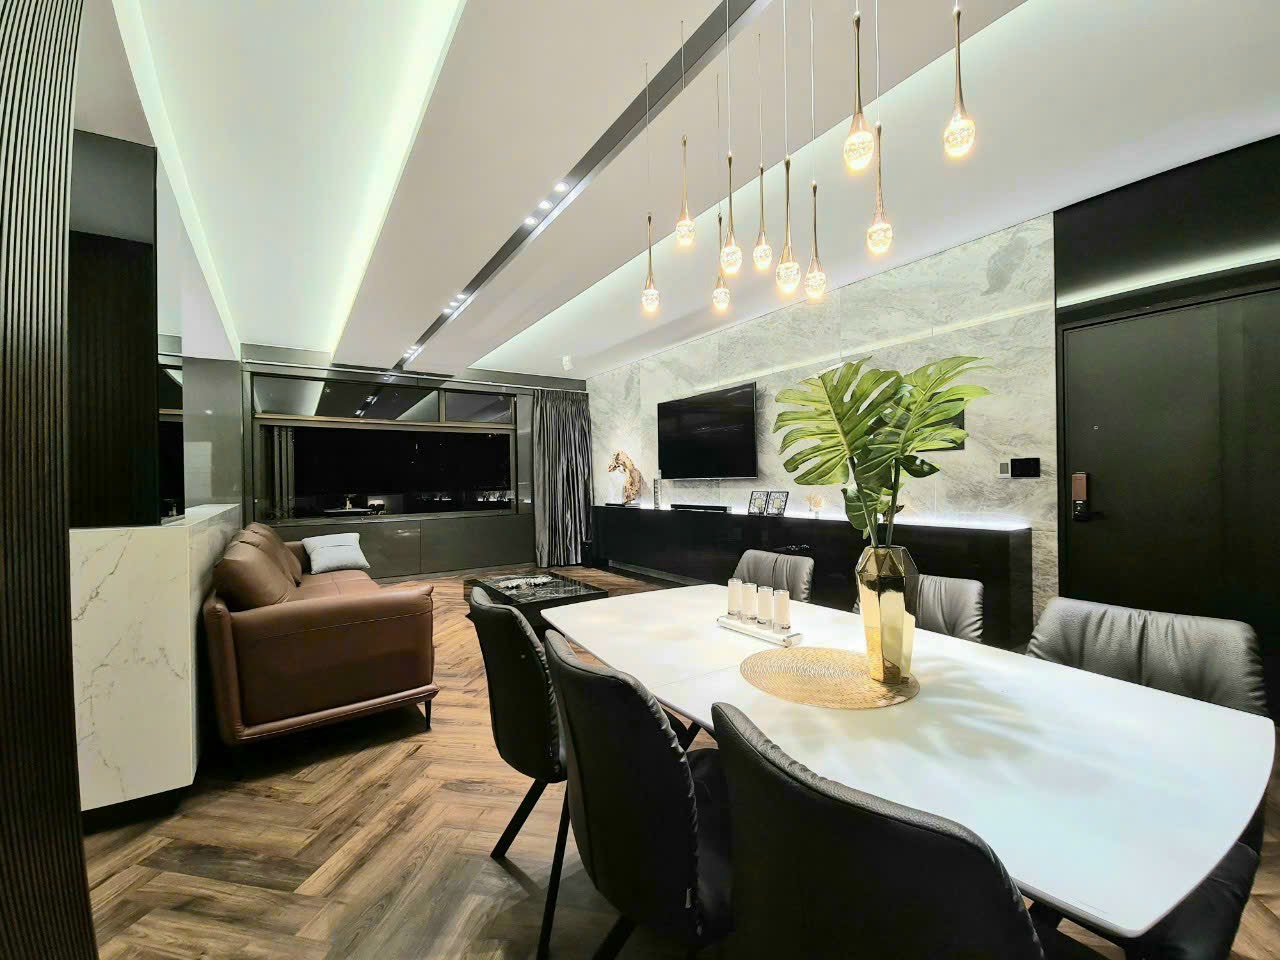 Cho thuê căn hộ 2PN Midtown nội thất đẹp giá cực rẻ chỉ 21 triệu/th! LH: Em Hà : 0919 054 528